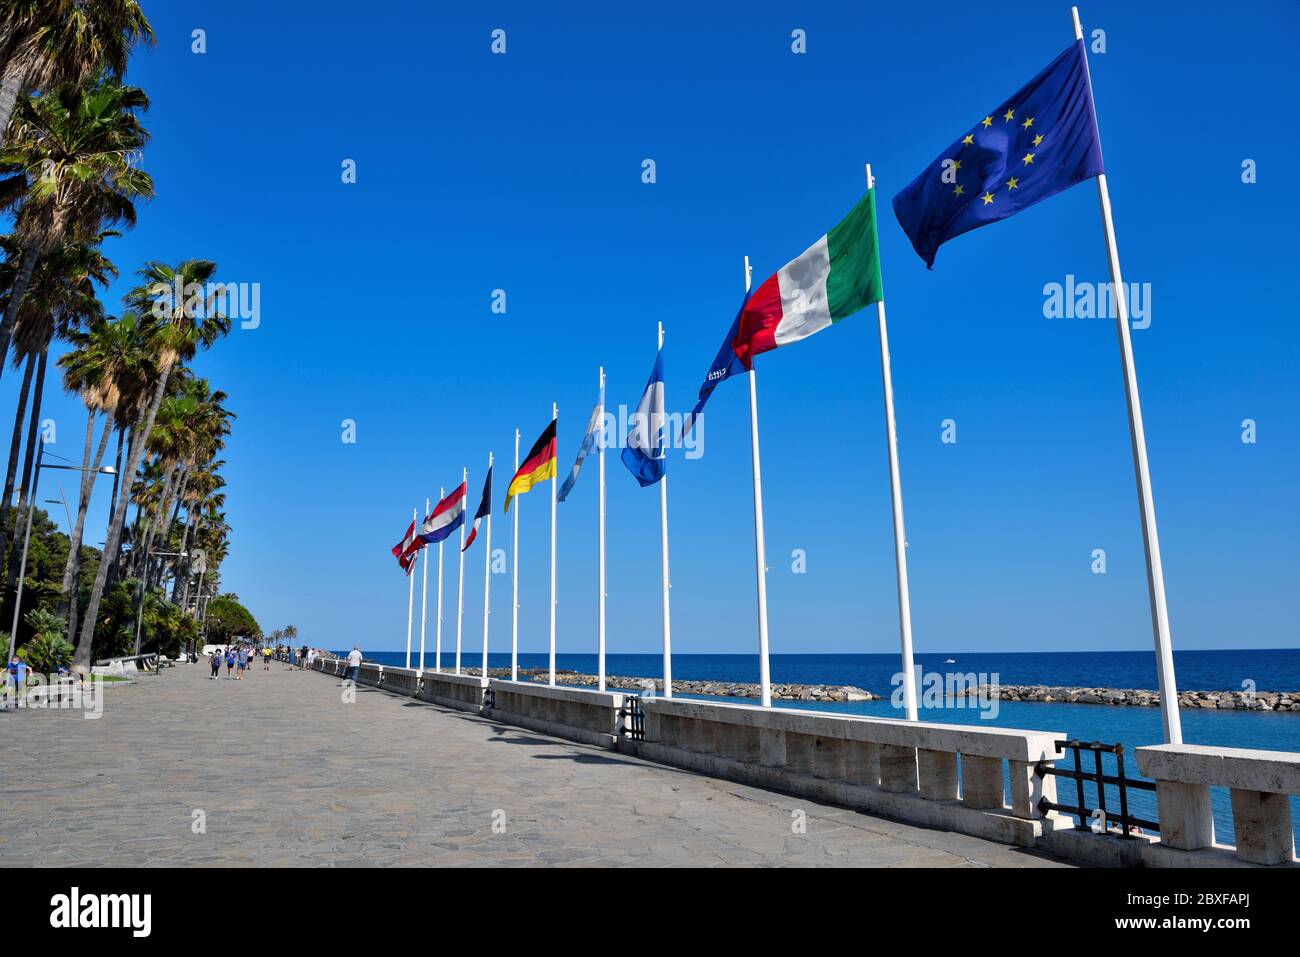 La promenade du bord de mer du village ligurien 19 mai 30 2020 Imperia Italie Banque D'Images